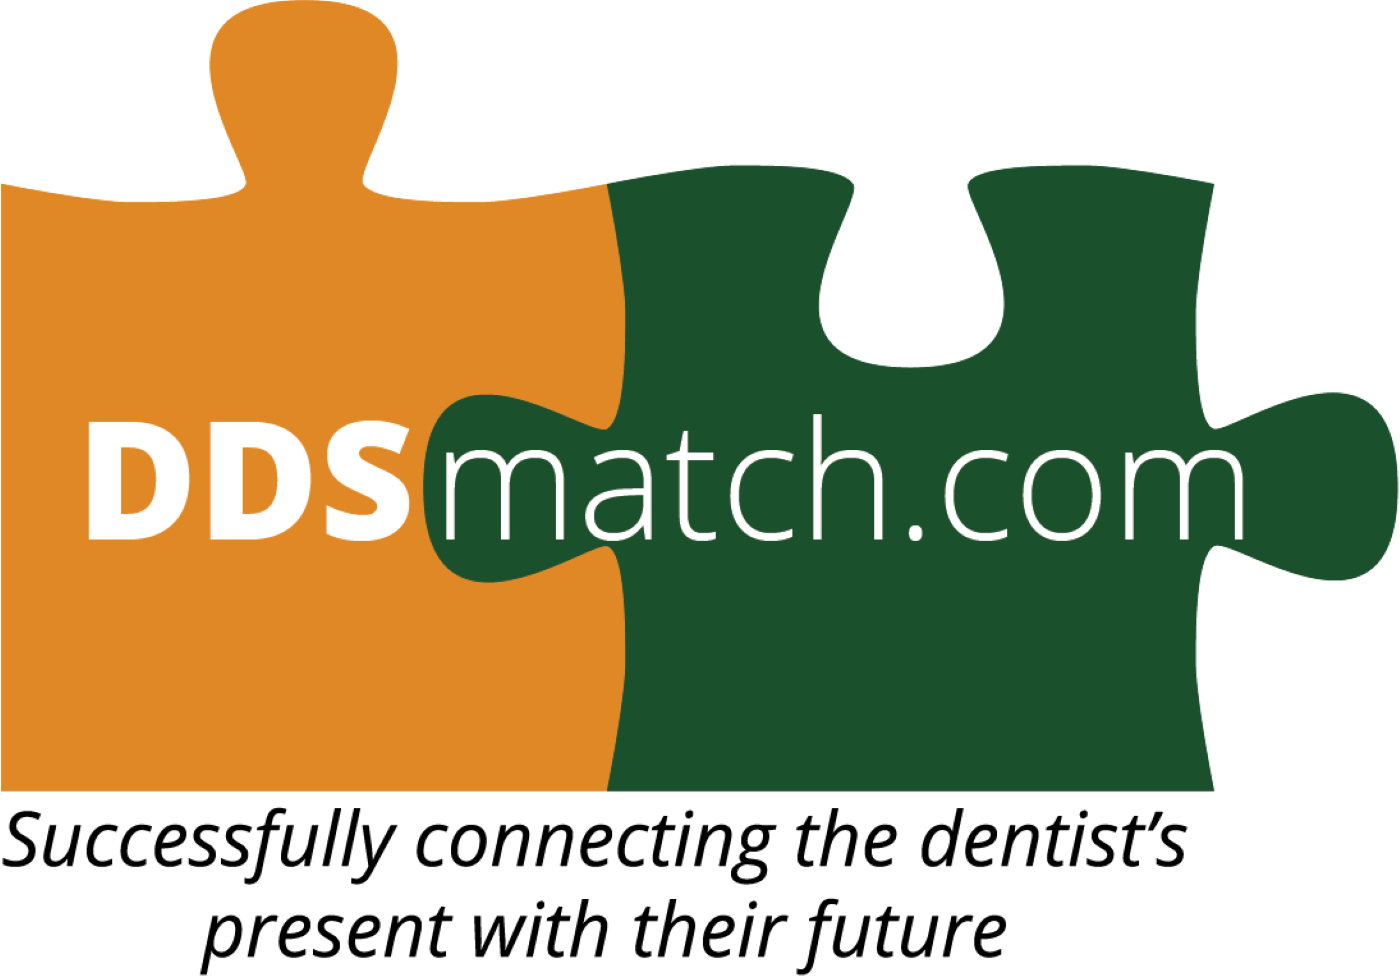 DDS Match - Steve Kampschnieder